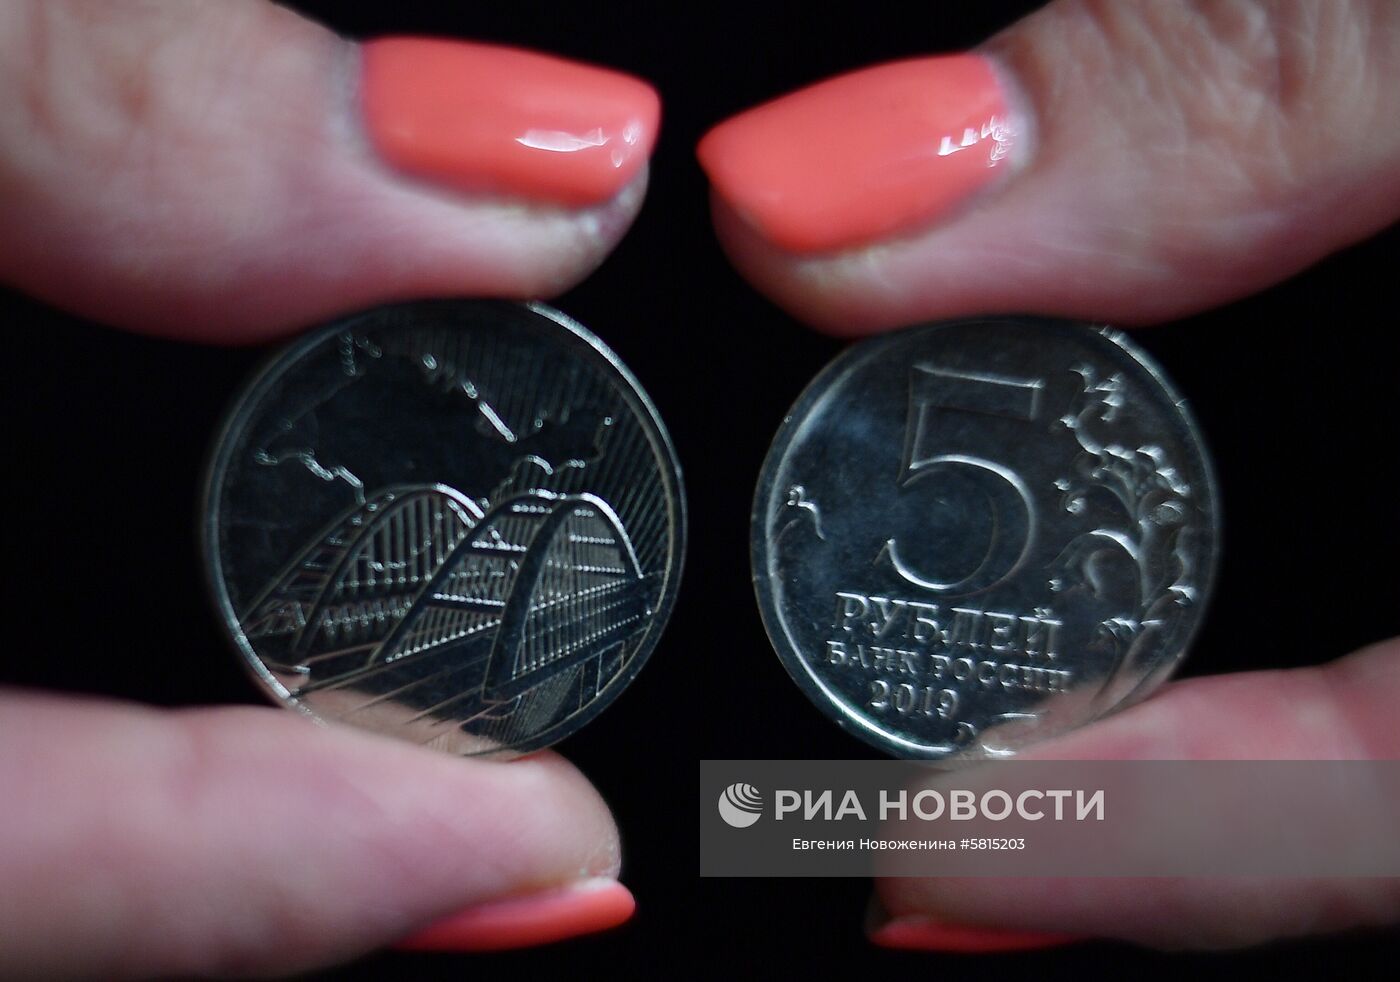 Банк России выпустил памятную монету к пятой годовщине воссоединения Крыма с Россией